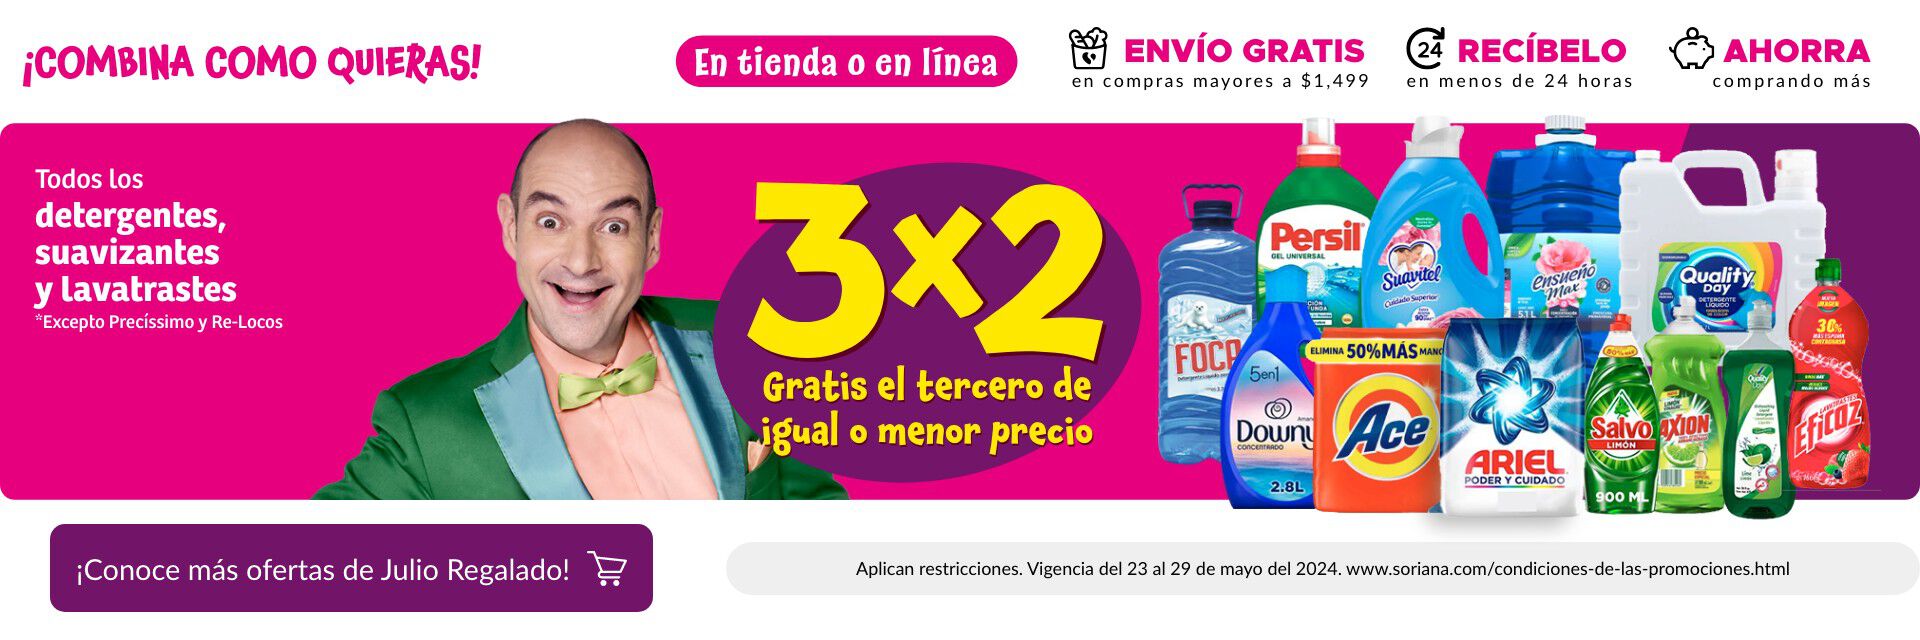 3x2 en todos los detergentes, suavizantes y lavatrastes (excepto Precíssimo y Re-Locos)